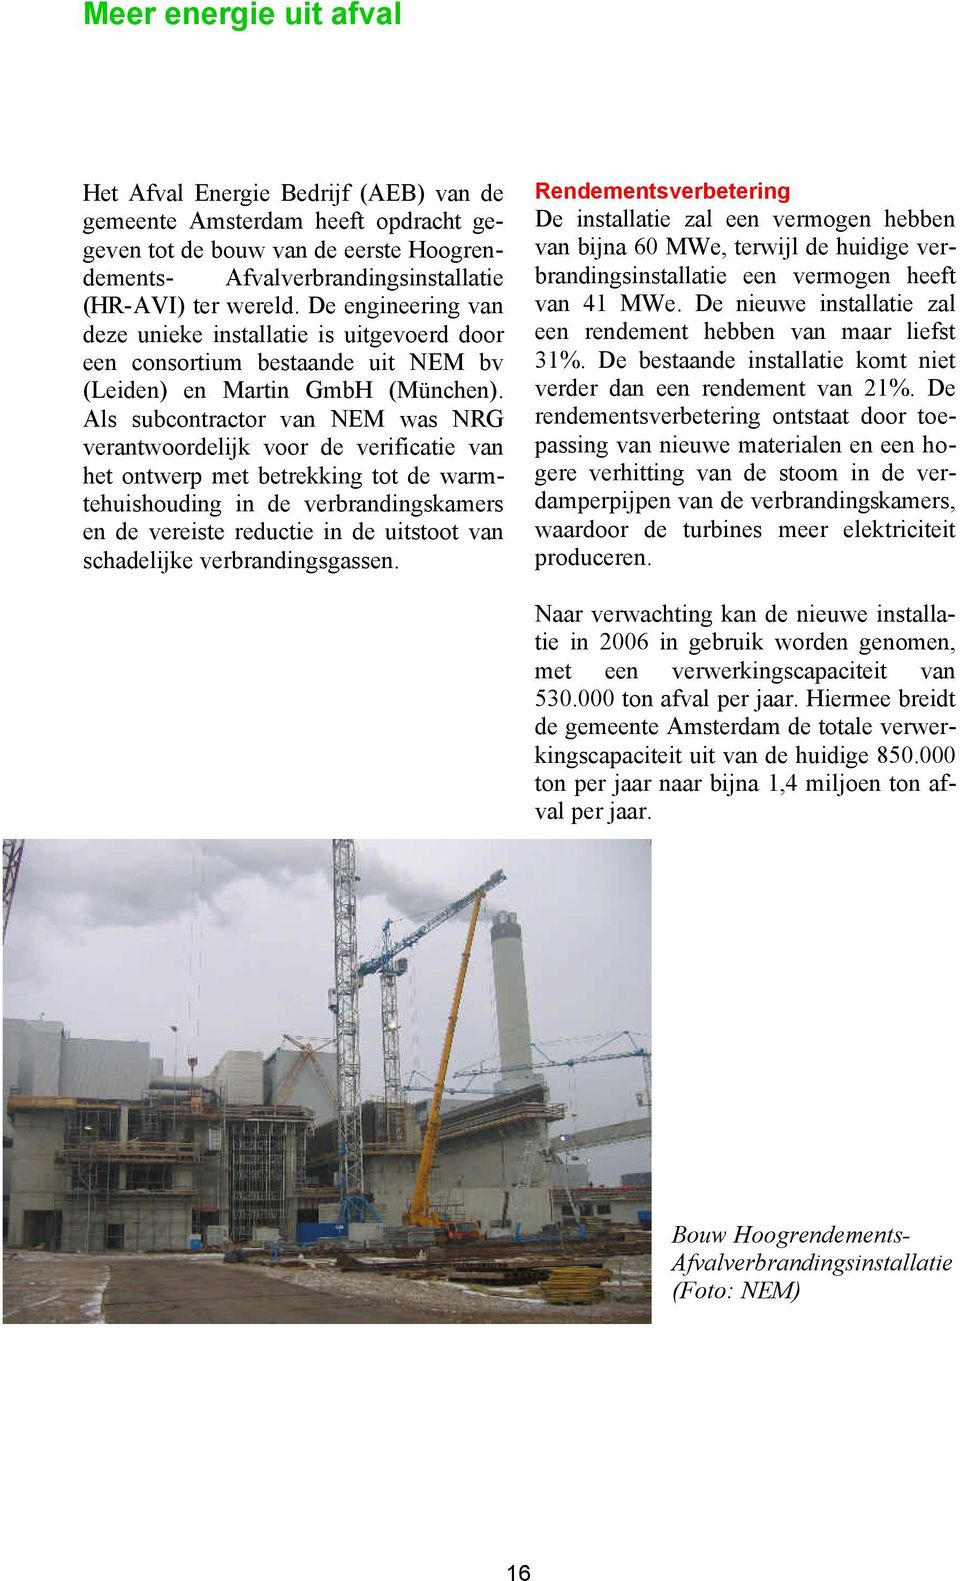 Als subcontractor van NEM was NRG verantwoordelijk voor de verificatie van het ontwerp met betrekking tot de warmtehuishouding in de verbrandingskamers en de vereiste reductie in de uitstoot van